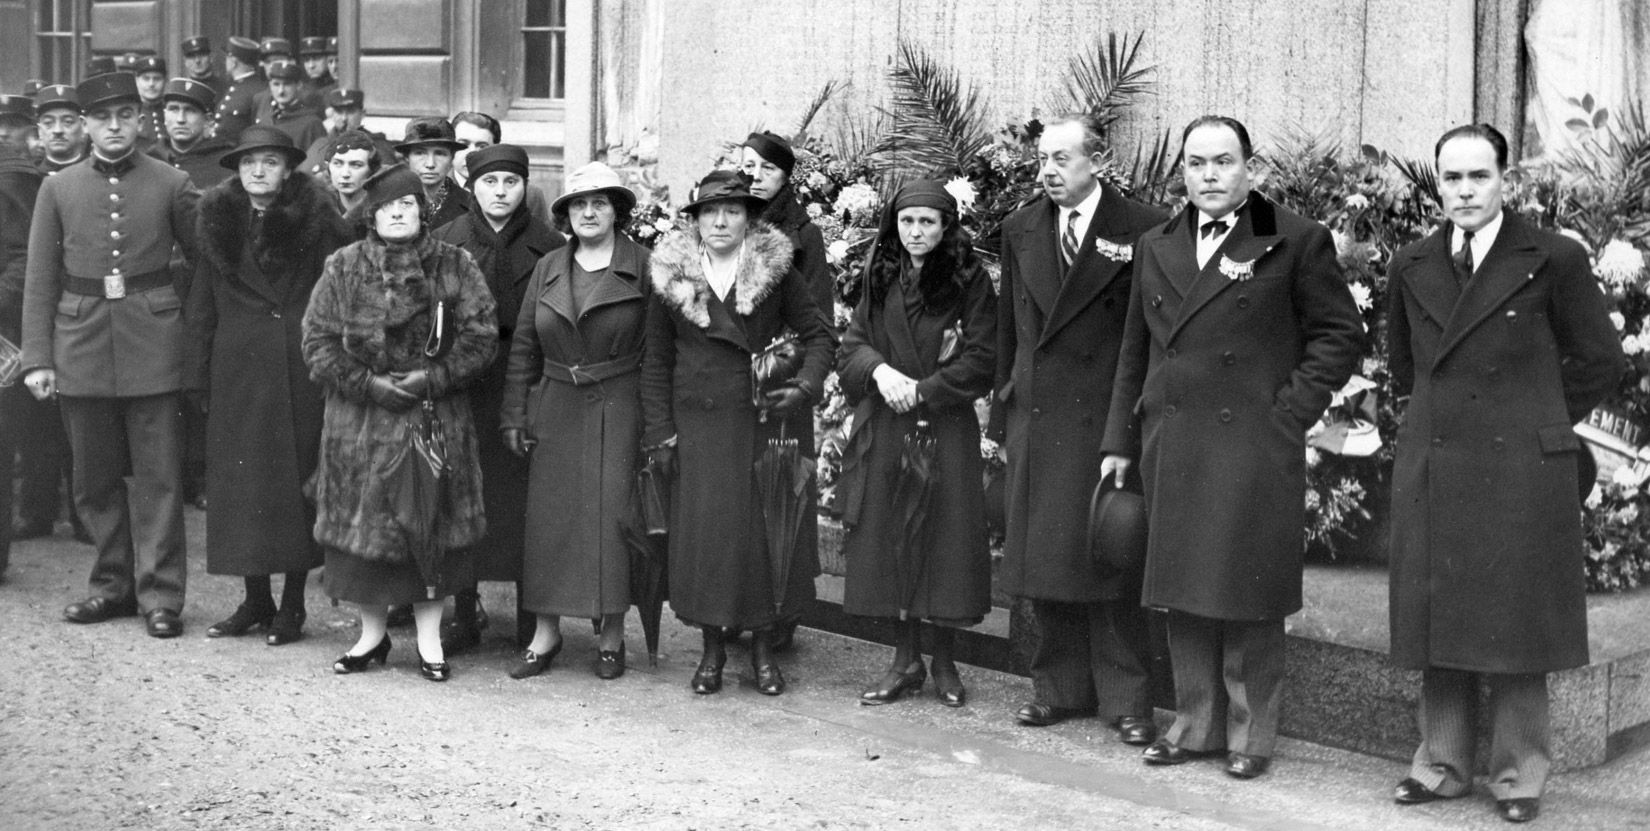 1932 - Inauguration des monuments aux Morts de la Préfecture de Police - De droite à gauche : GAUFFRE Paul (Trésorier Général), GAUFFRE Louis (Trésorier adjoint), PONCEY Arsène (1er Vice-président), des veuves et des policiers